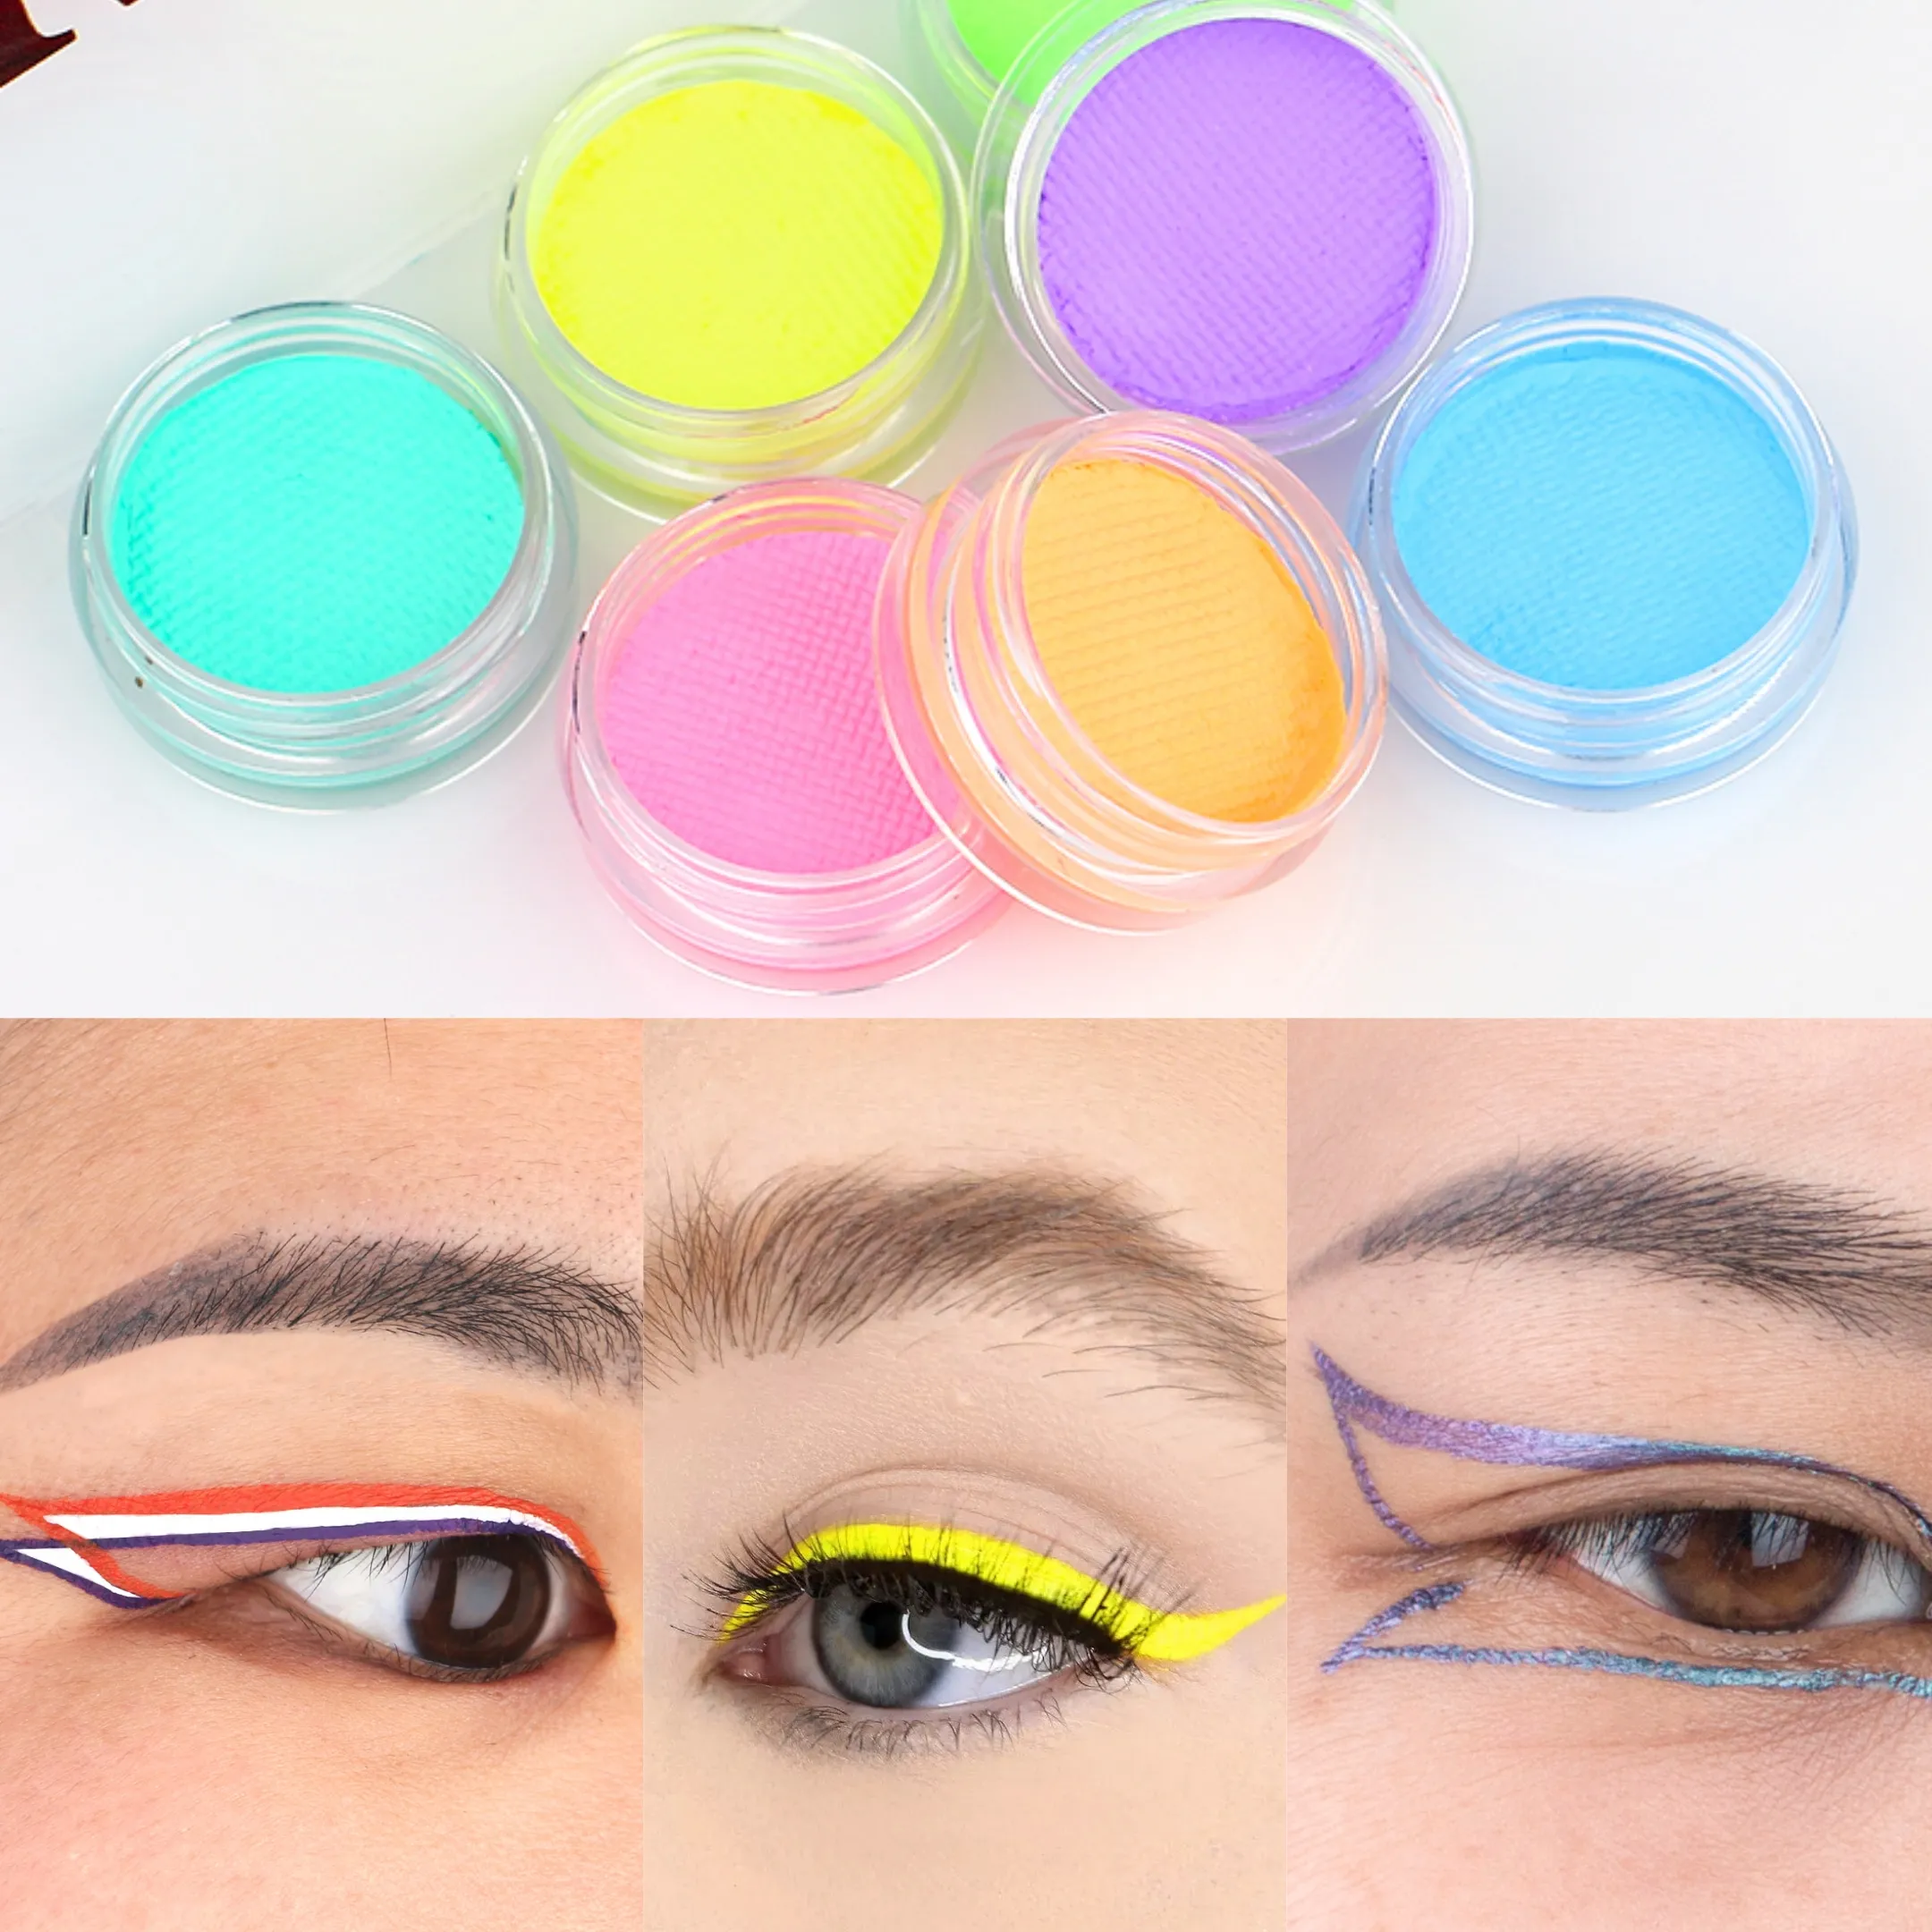 Fabrika uv canlı renk neon su aktif eyeliner makyaj için karanlık private label göz kalemi kızdırma